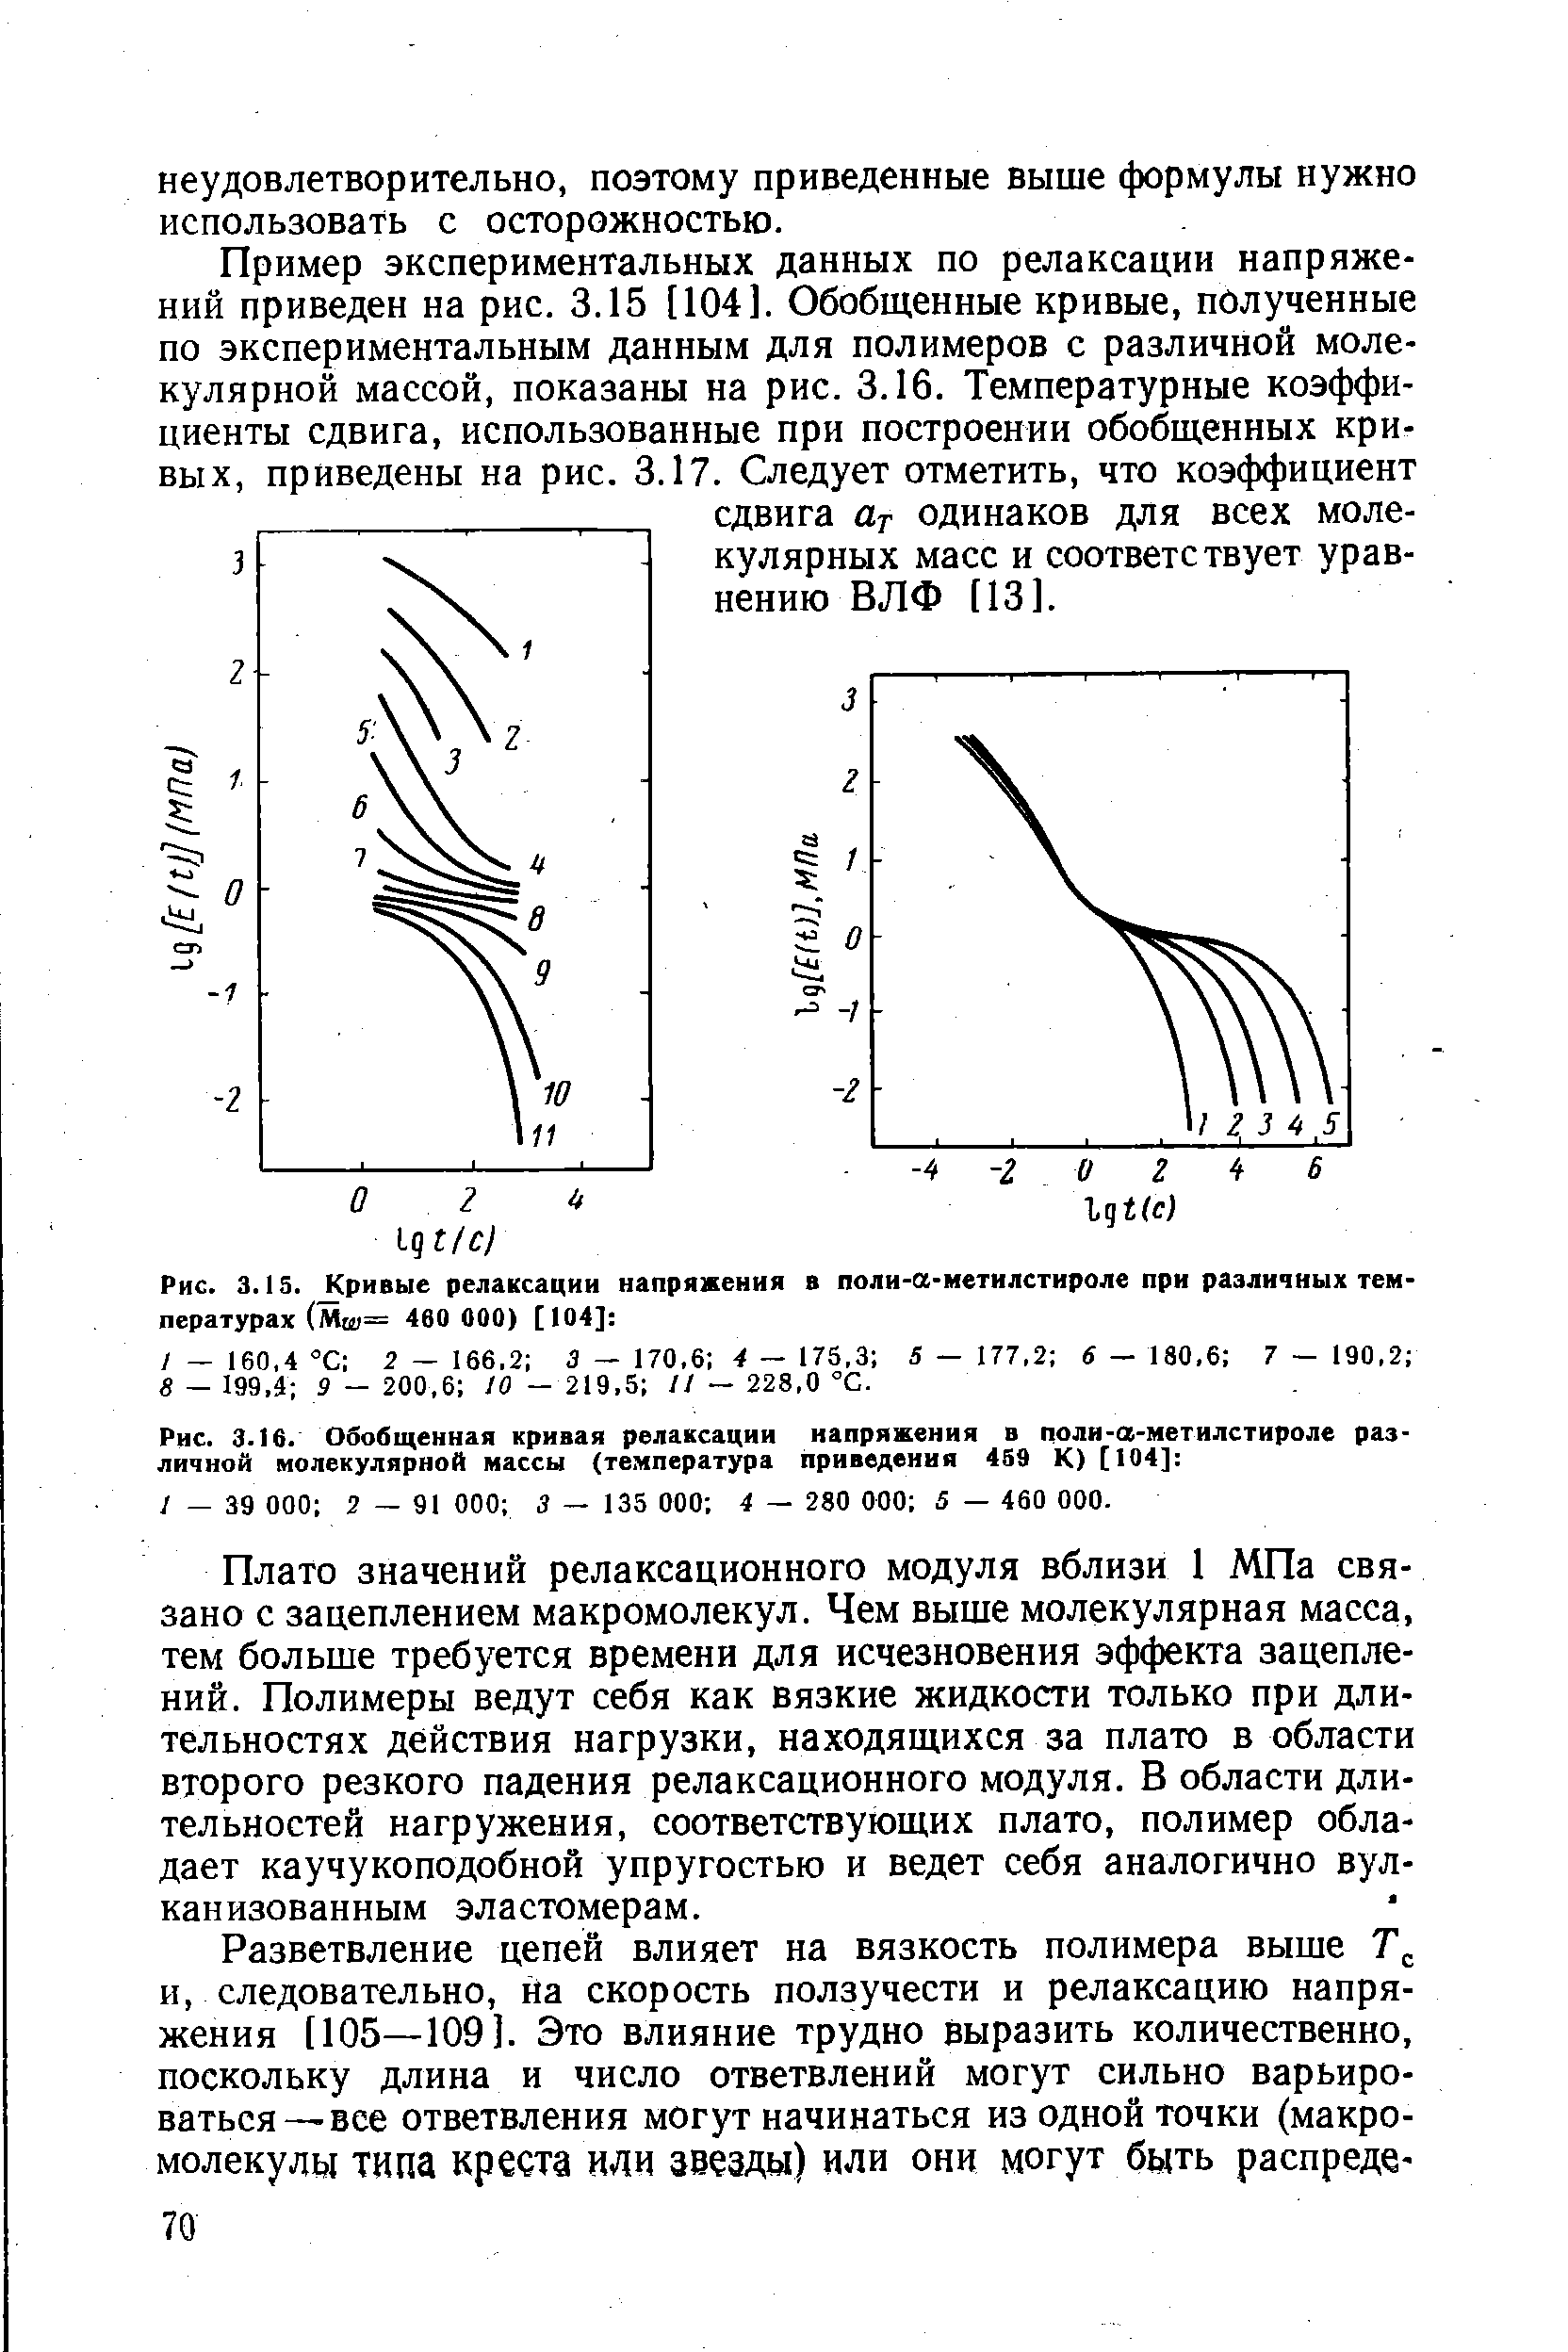 Рис. 3.1S. Кривые релаксации напряжения в поли-а-метилстироле при различных температурах (Мш== 460 000) [104] 
